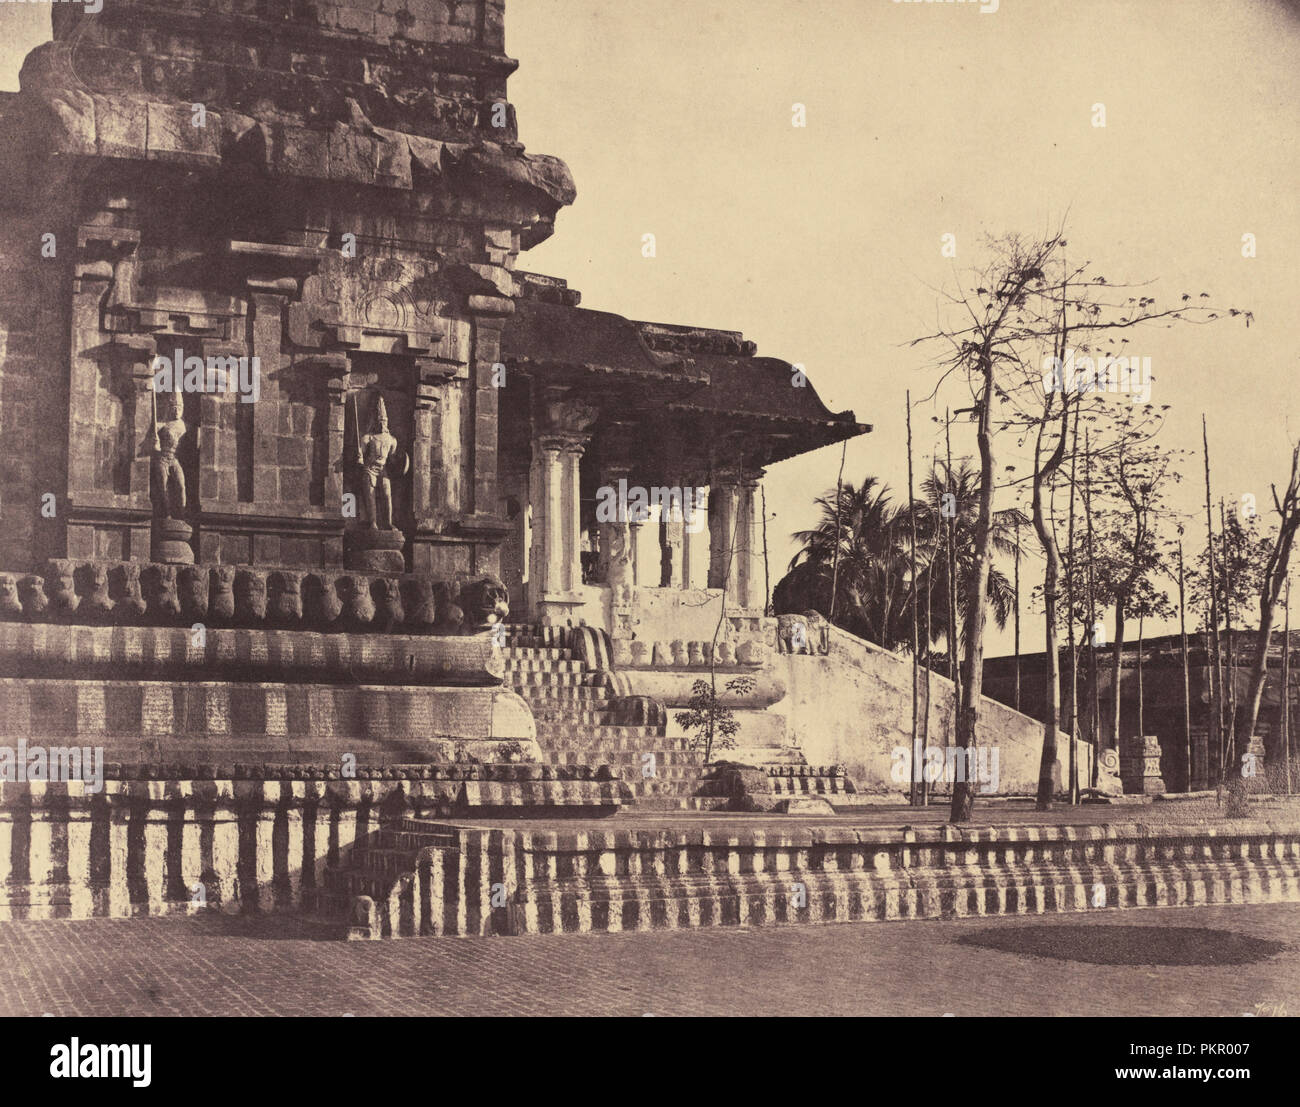 Tanjore: Grande Pagoda, Ingresso guardando verso l'esterno. Data: marzo-aprile 1858. Dimensioni: foglio (rifilato per immagine): 27,2 x 34,7 cm (10 11/16 x 13 11/16 in.) supporto: 45,6 x 57,5 cm (17 15/16 x 22 5/8 in.). Medium: albume stampa. Museo: National Gallery of Art di Washington DC. Autore: Linnaeus trippa. Foto Stock